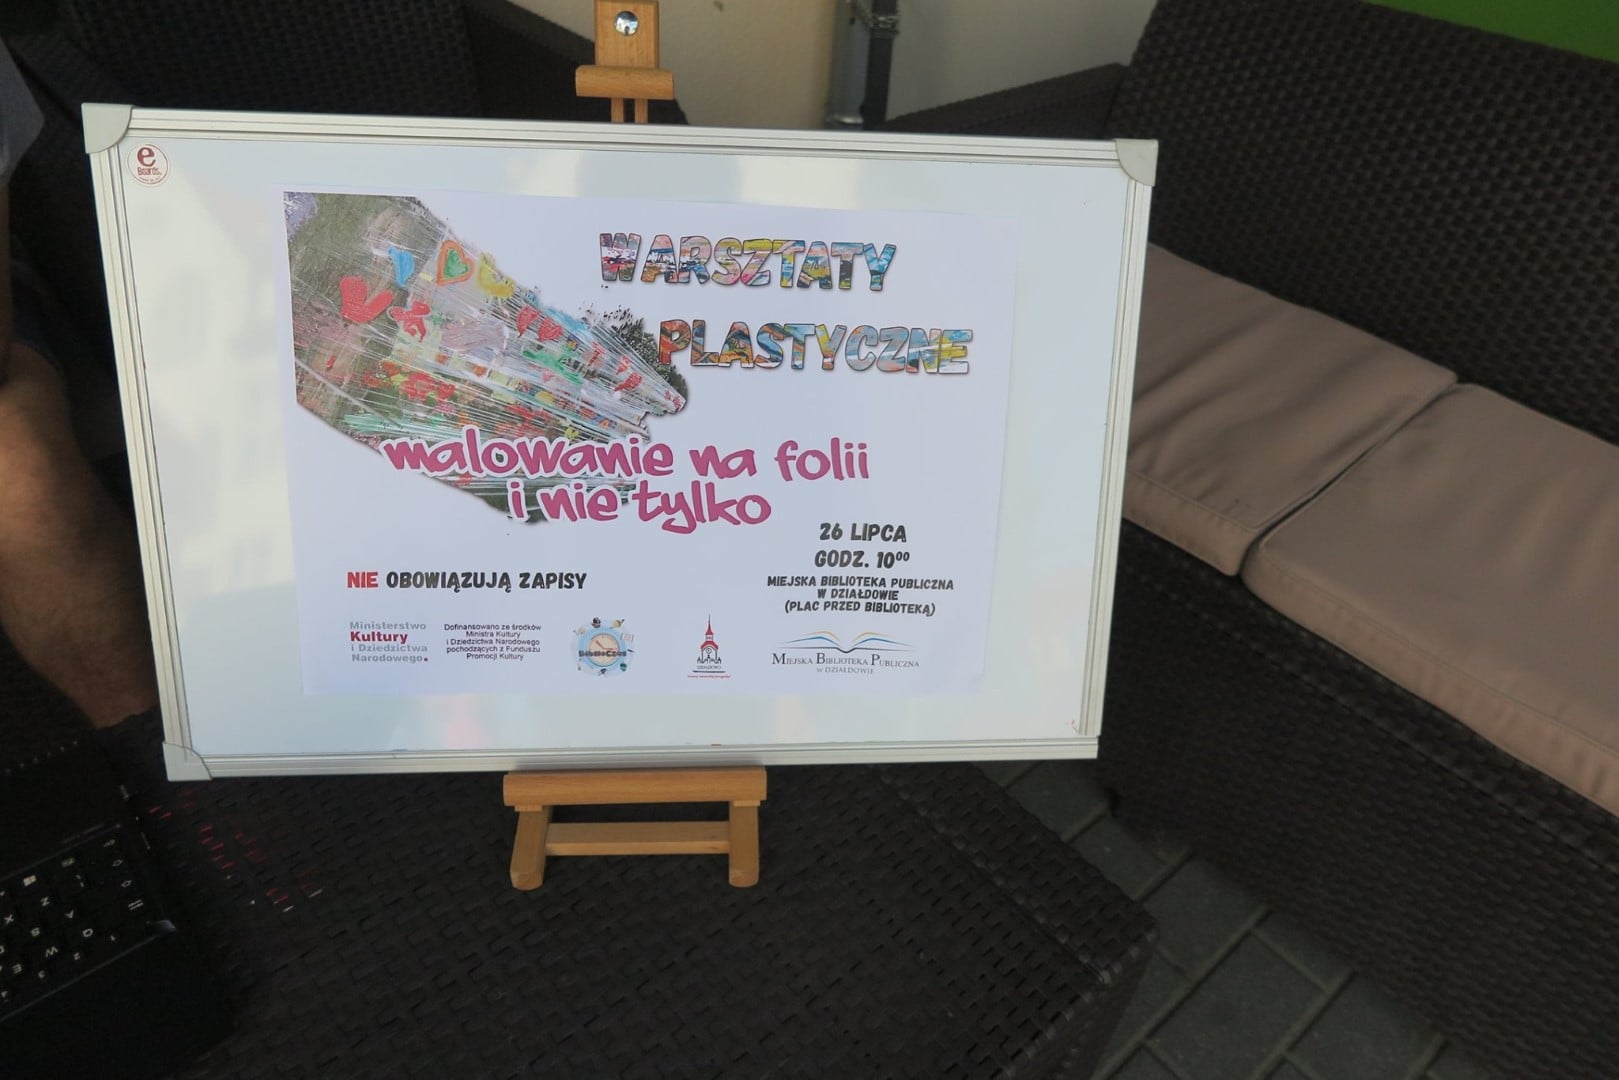 Na sztaludze plakat MBP ''Warsztaty Plastyczne''. Malowanie na folii i nie tylko. 26 lipca godz.10:00.  